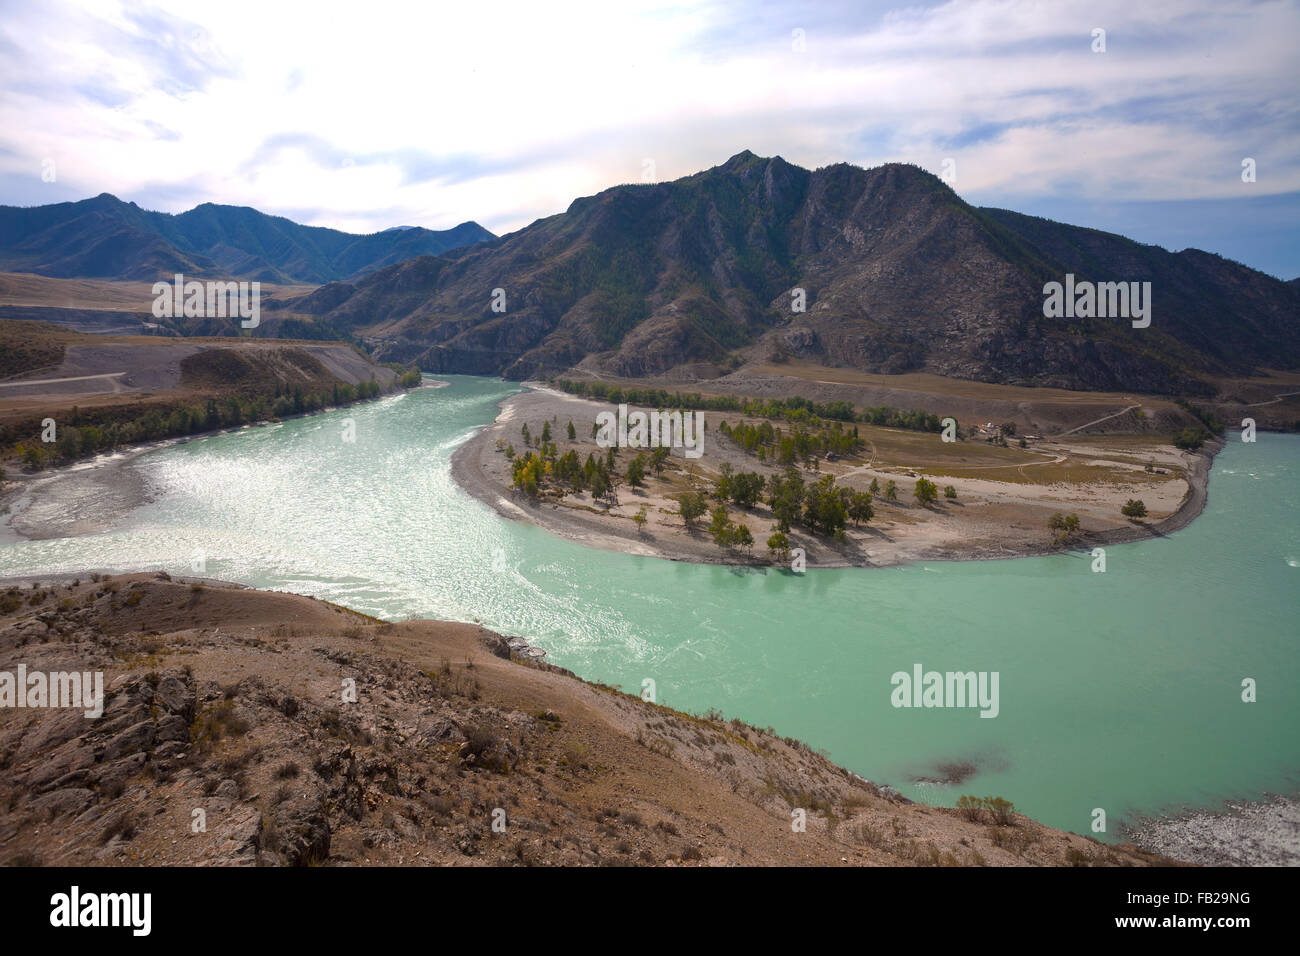 Vue sur le confluent de la Chuya et rivières Katun Katun, vallée, montagnes de l'Altaï, en Russie Banque D'Images